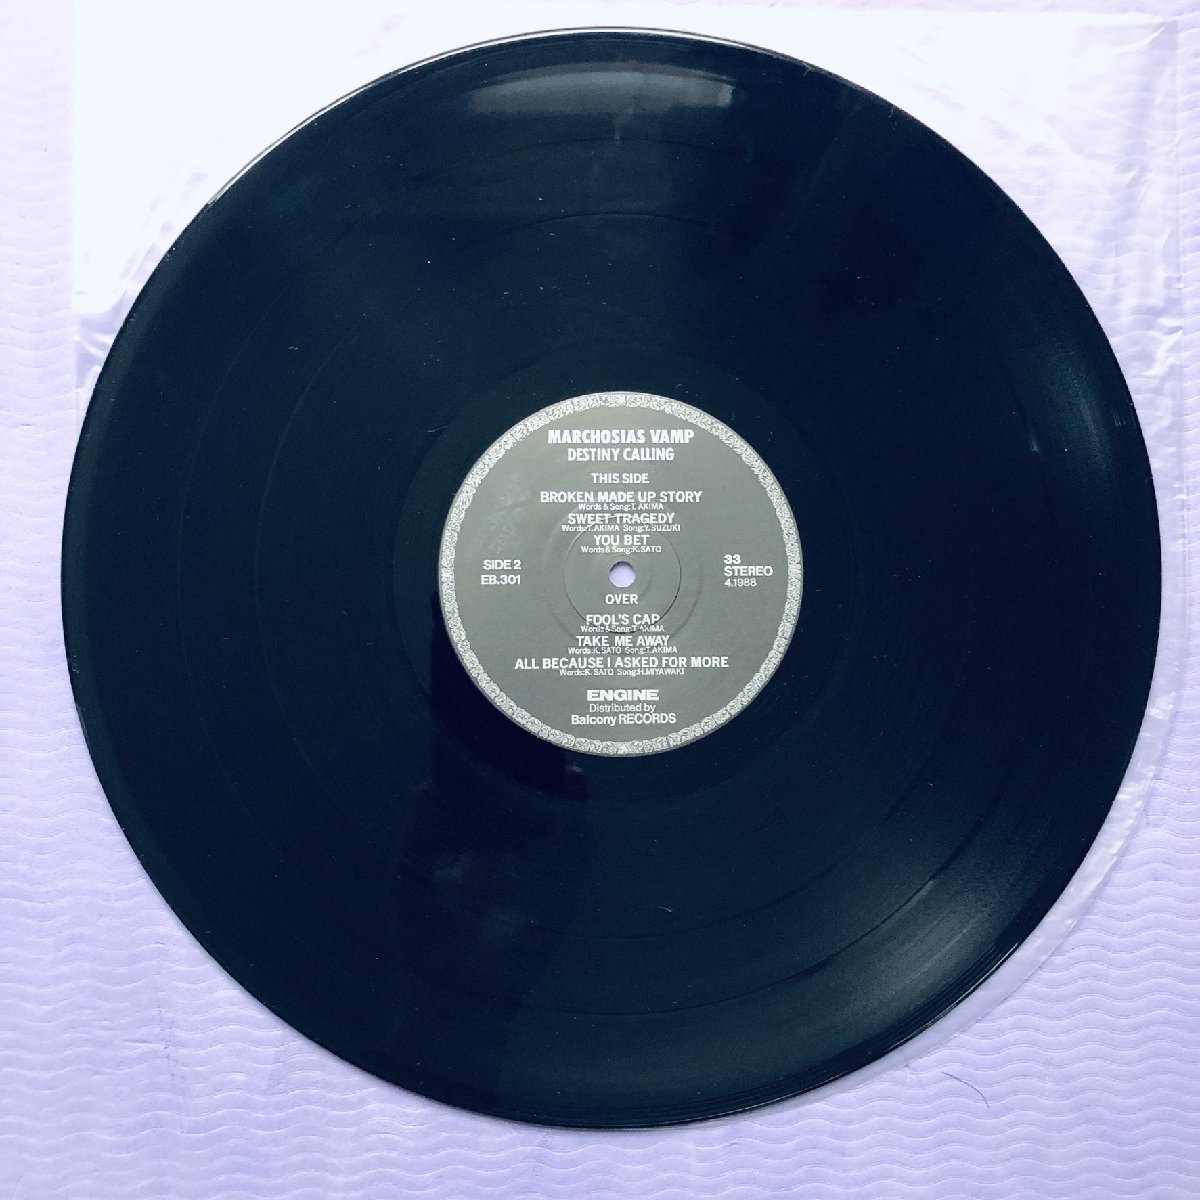 傷なし美盤 レア盤 マルコシアス・バンプ Marchosias Vamp 1988年 LPレコード デスティニー・コーリング Destiny Calling J-Rock イカ天_画像8